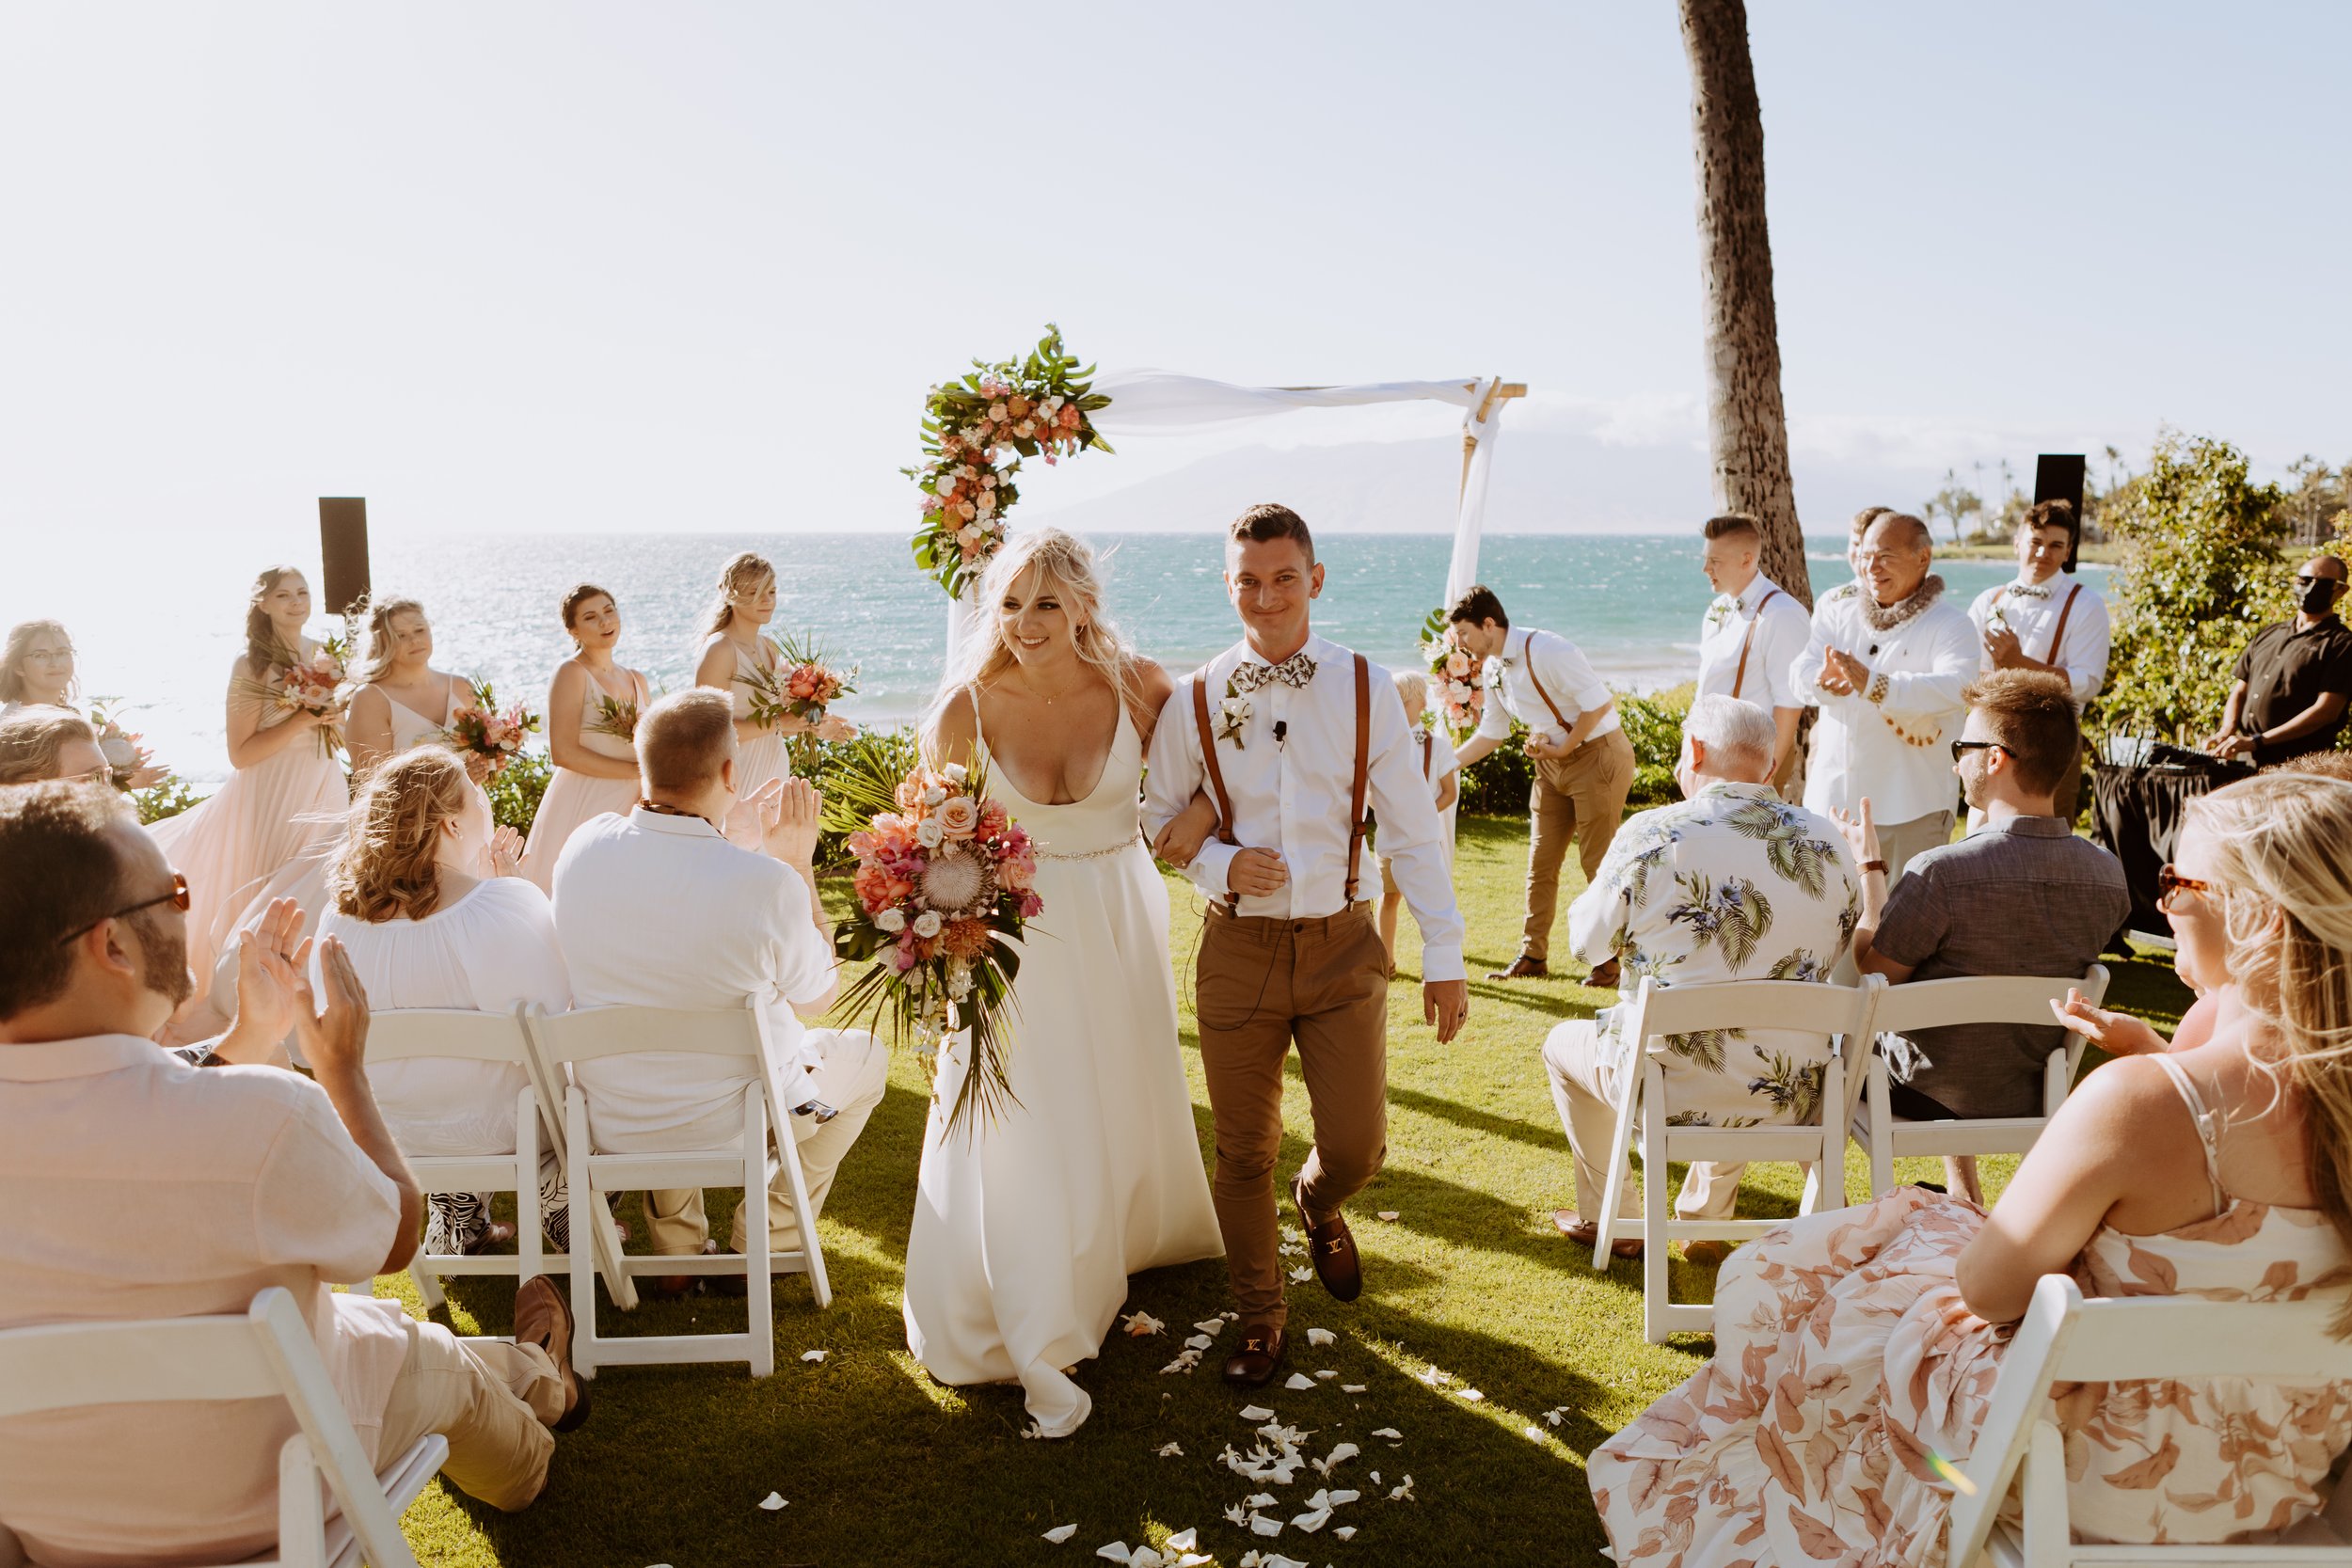 Makaili + Mac Lakin | Grand Wailea Maui Wedding - Hawaii Photographer374.jpg